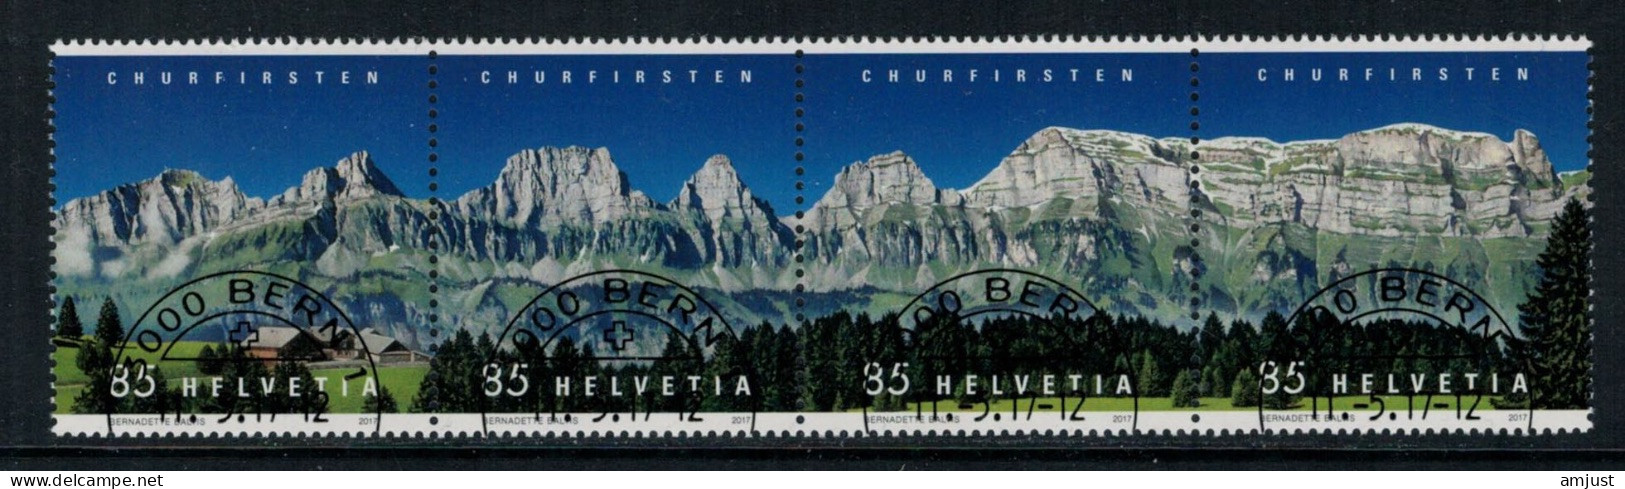 Suisse /Schweiz/Svizzera/Switzerland // 2017 // Churfirsten  Oblitéré No. 1631-1634 - Usati